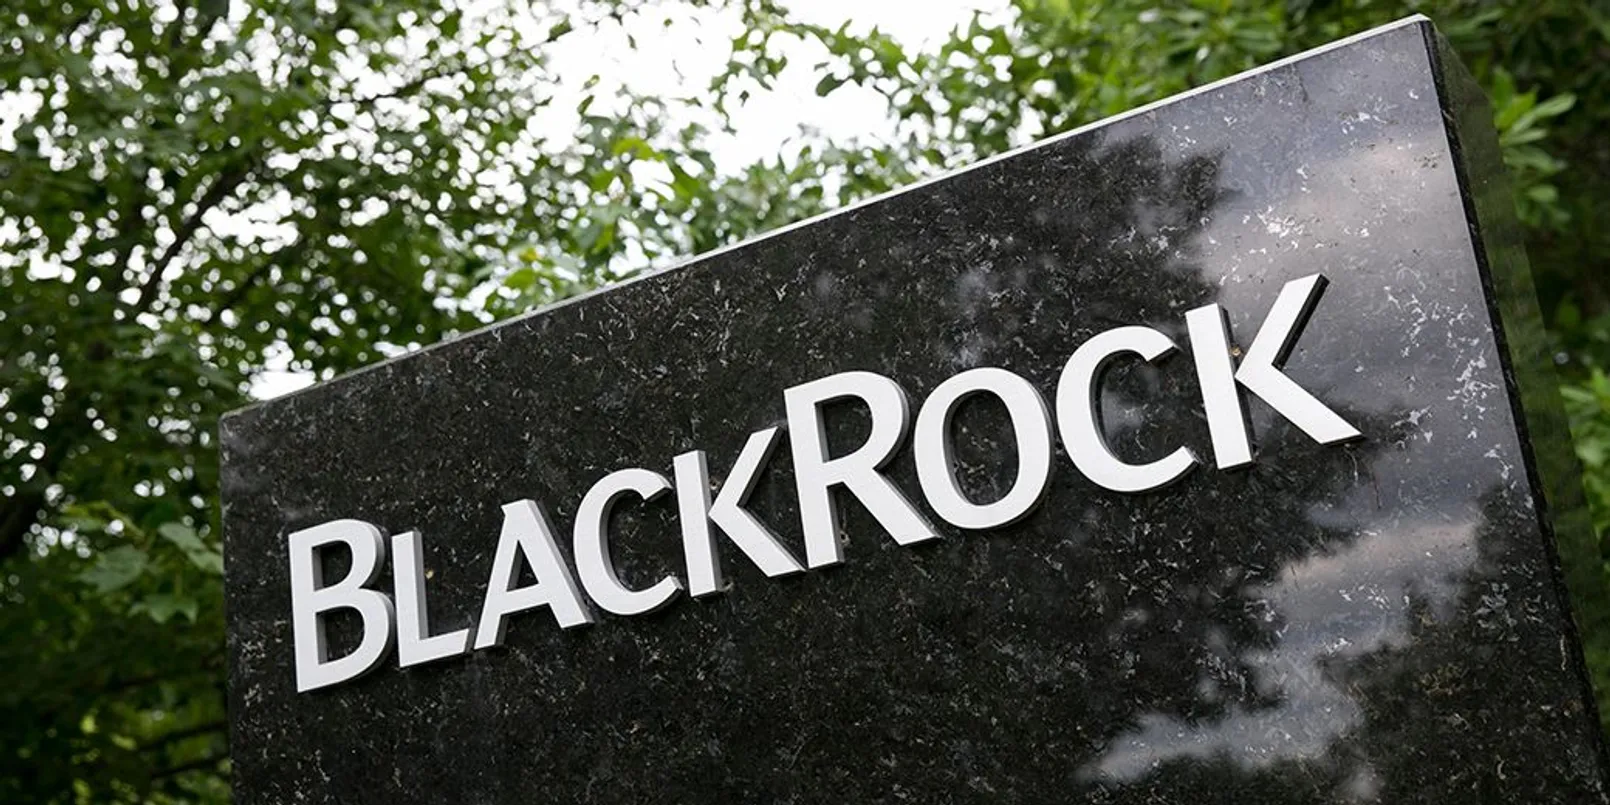 Black Rock.jpg